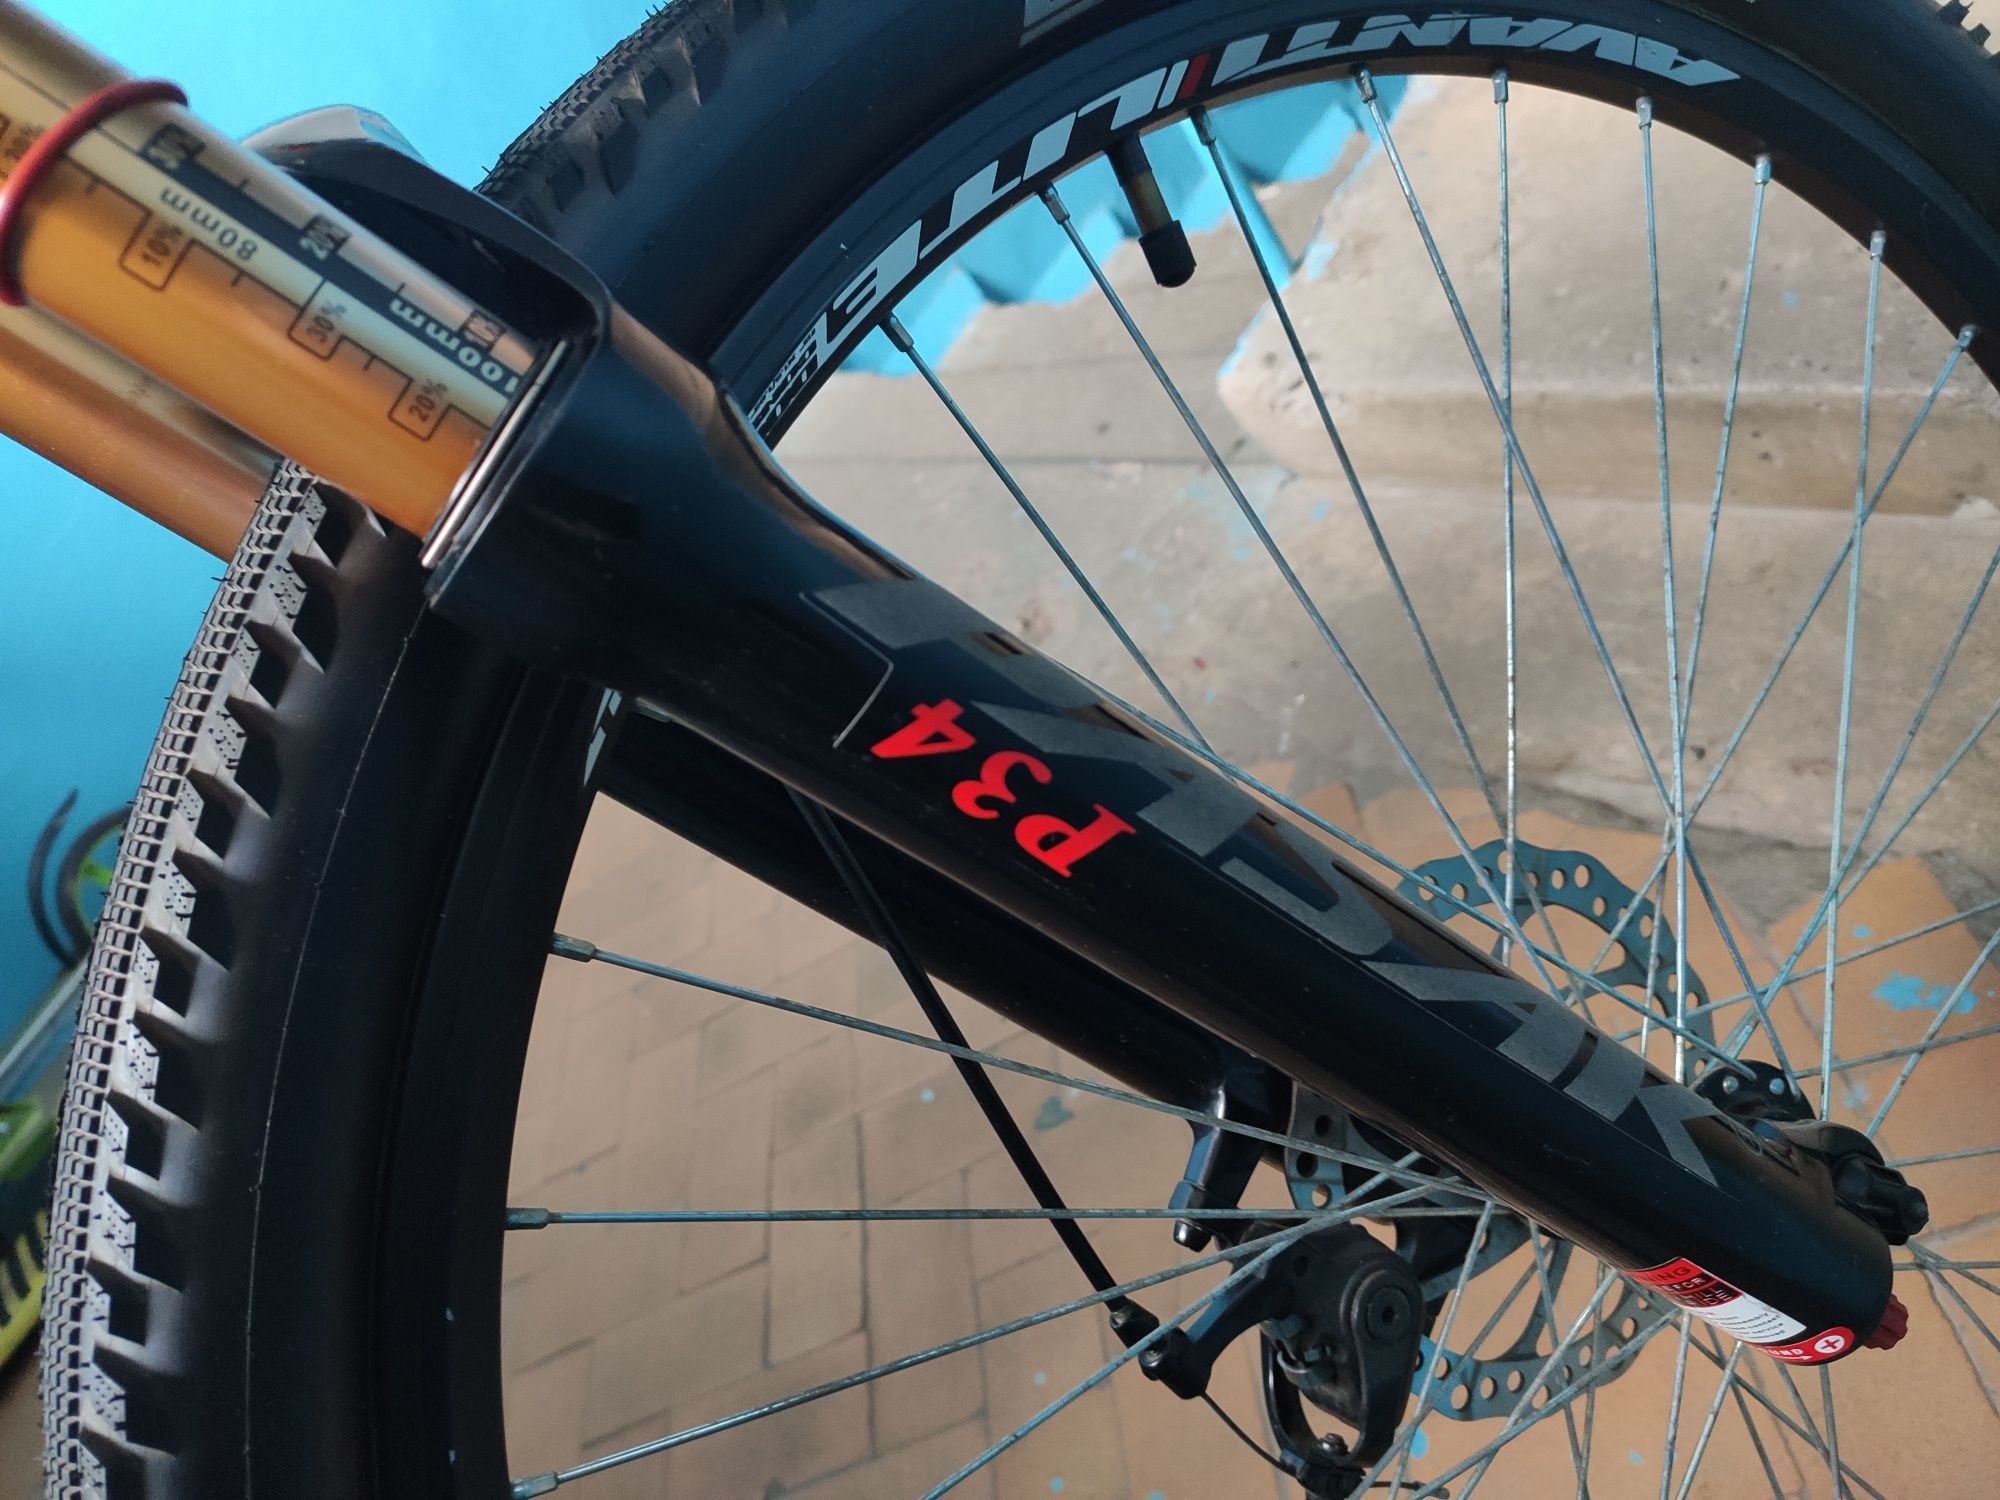 Електро велосипед зібраний на алюмінієвій рамі Avanti smart 19".